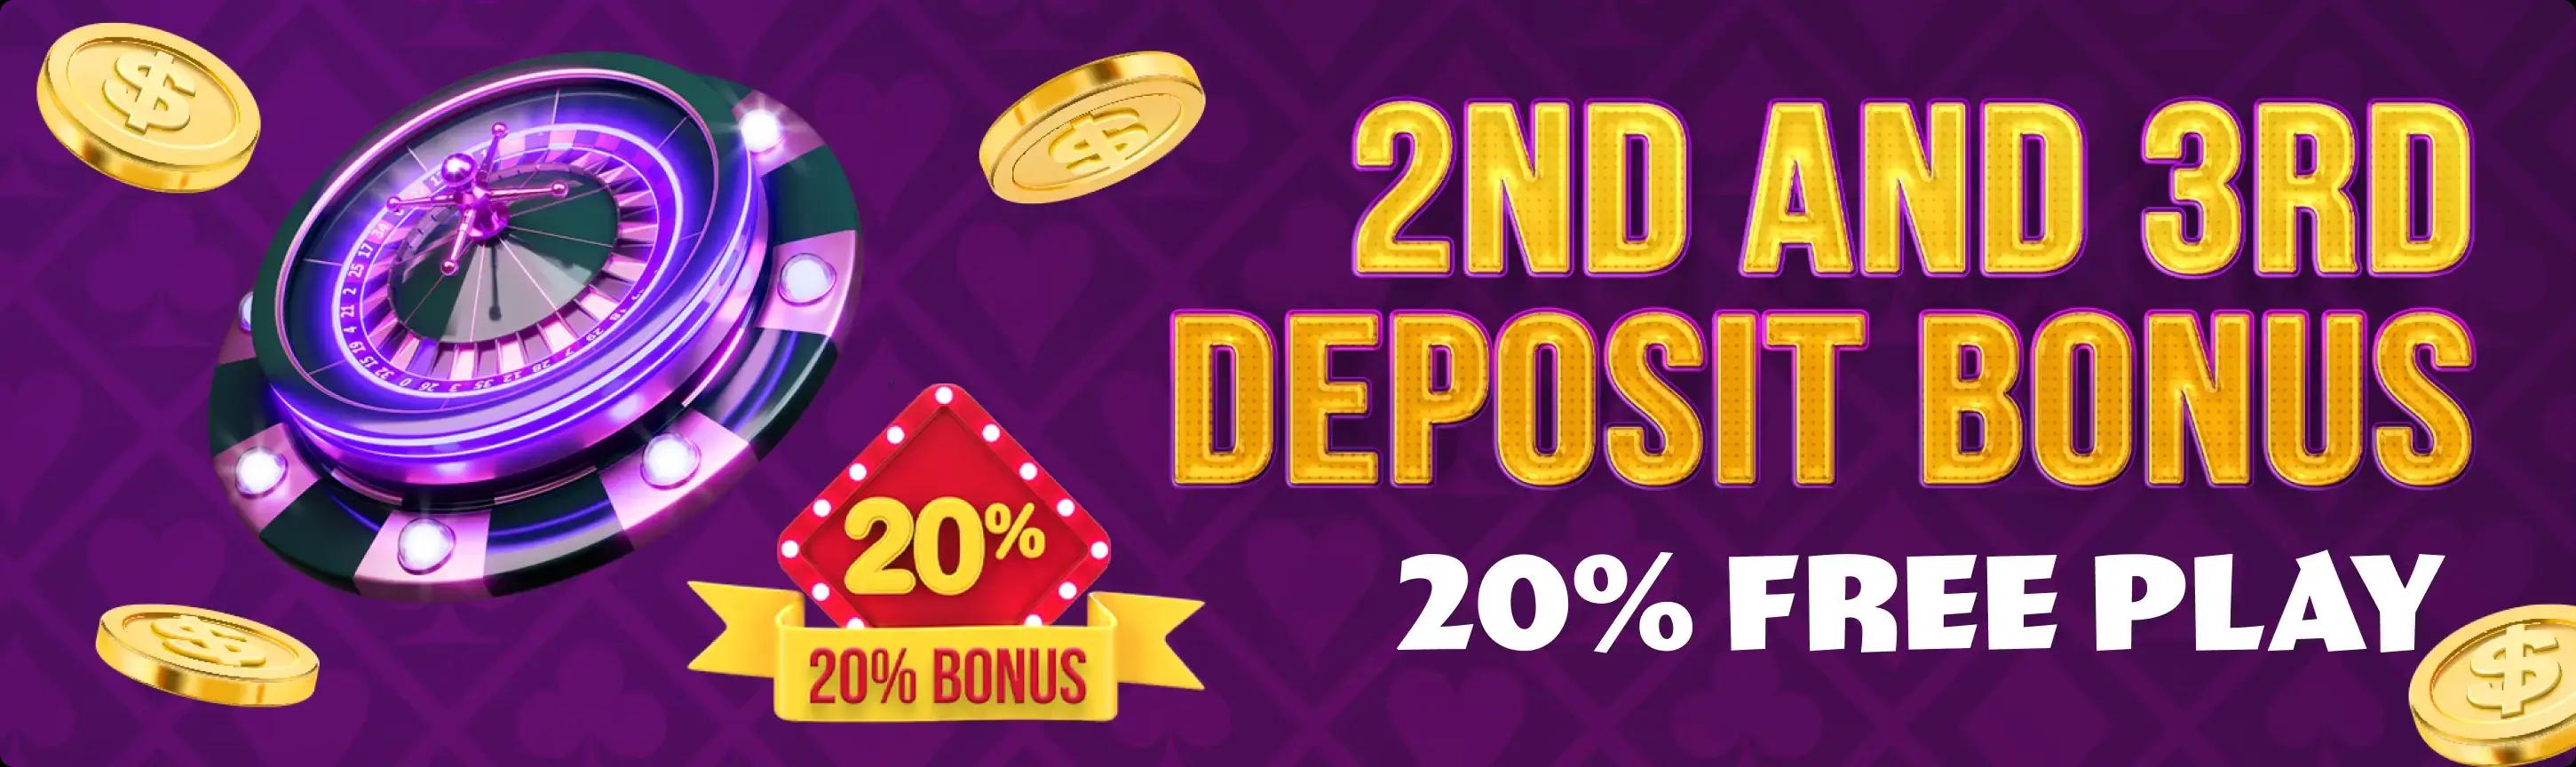 second and third deposit bonus